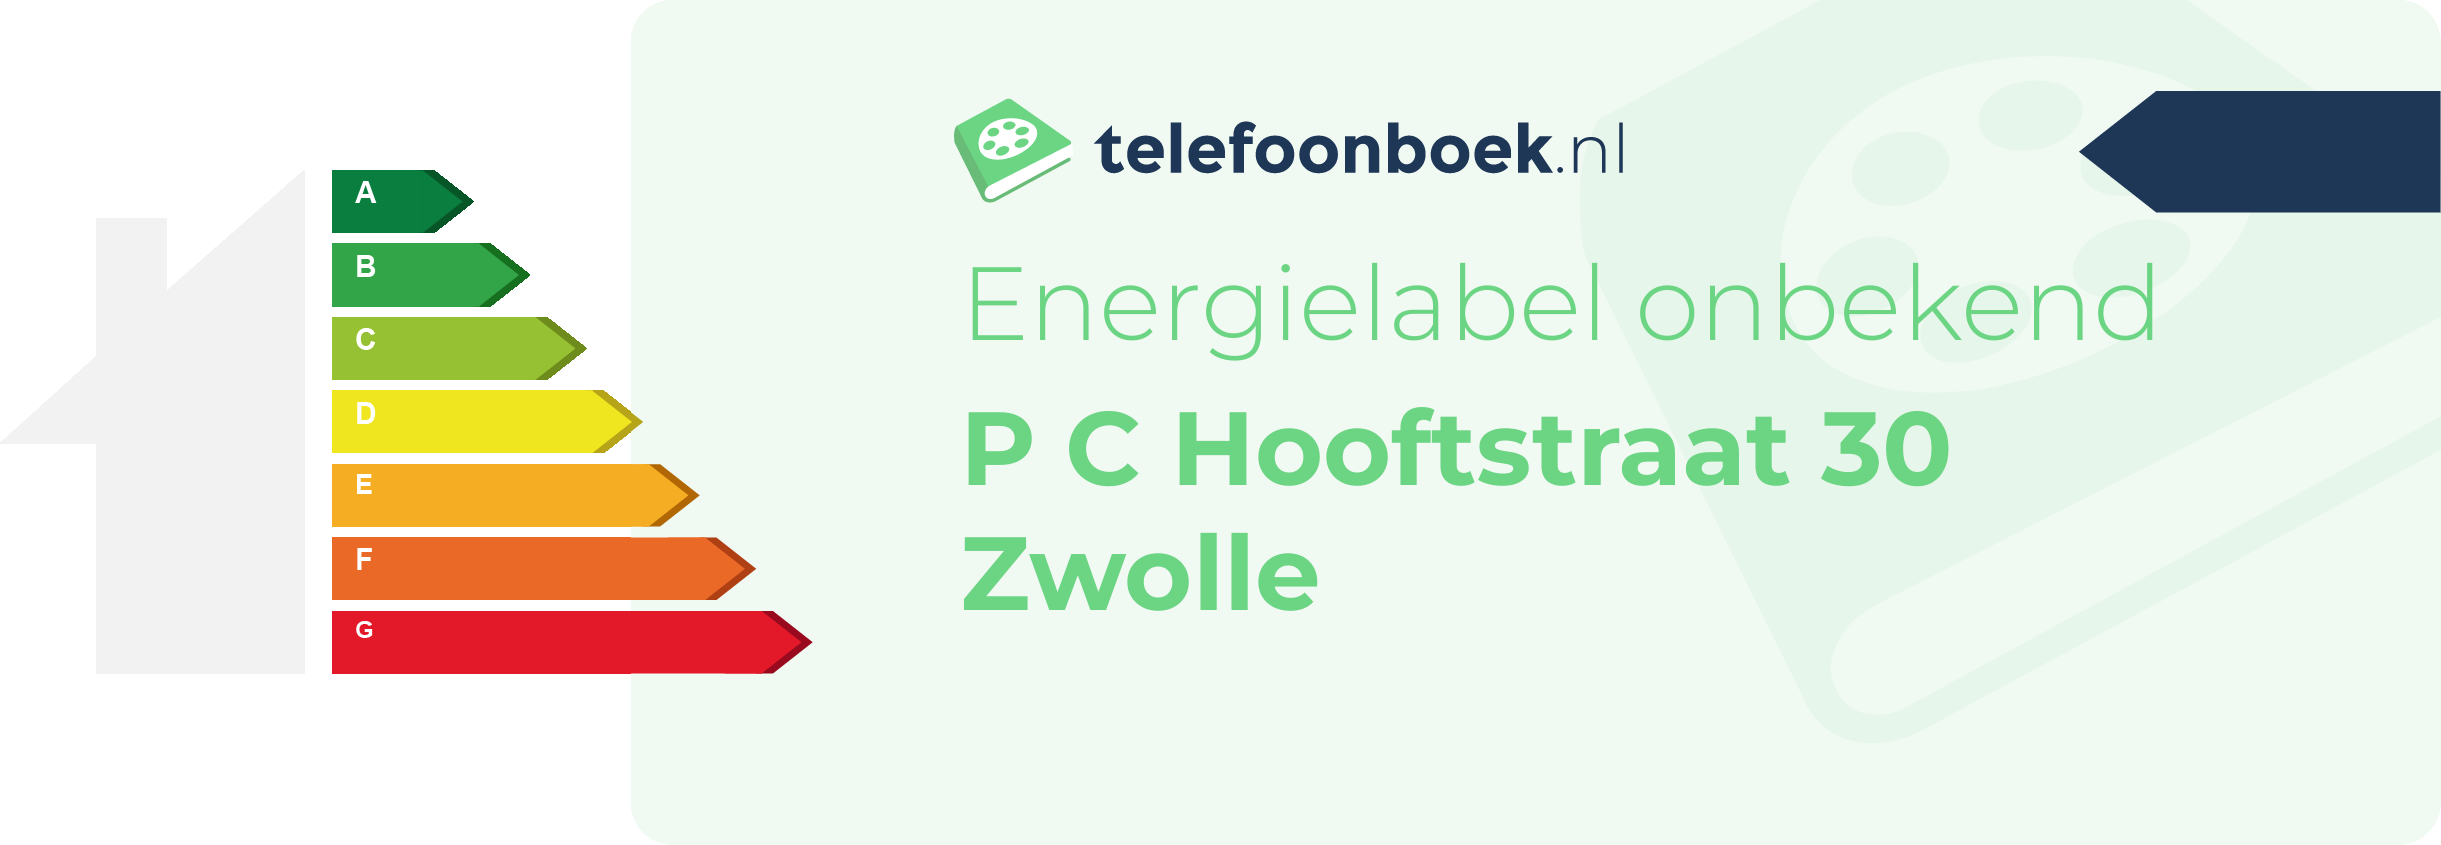 Energielabel P C Hooftstraat 30 Zwolle